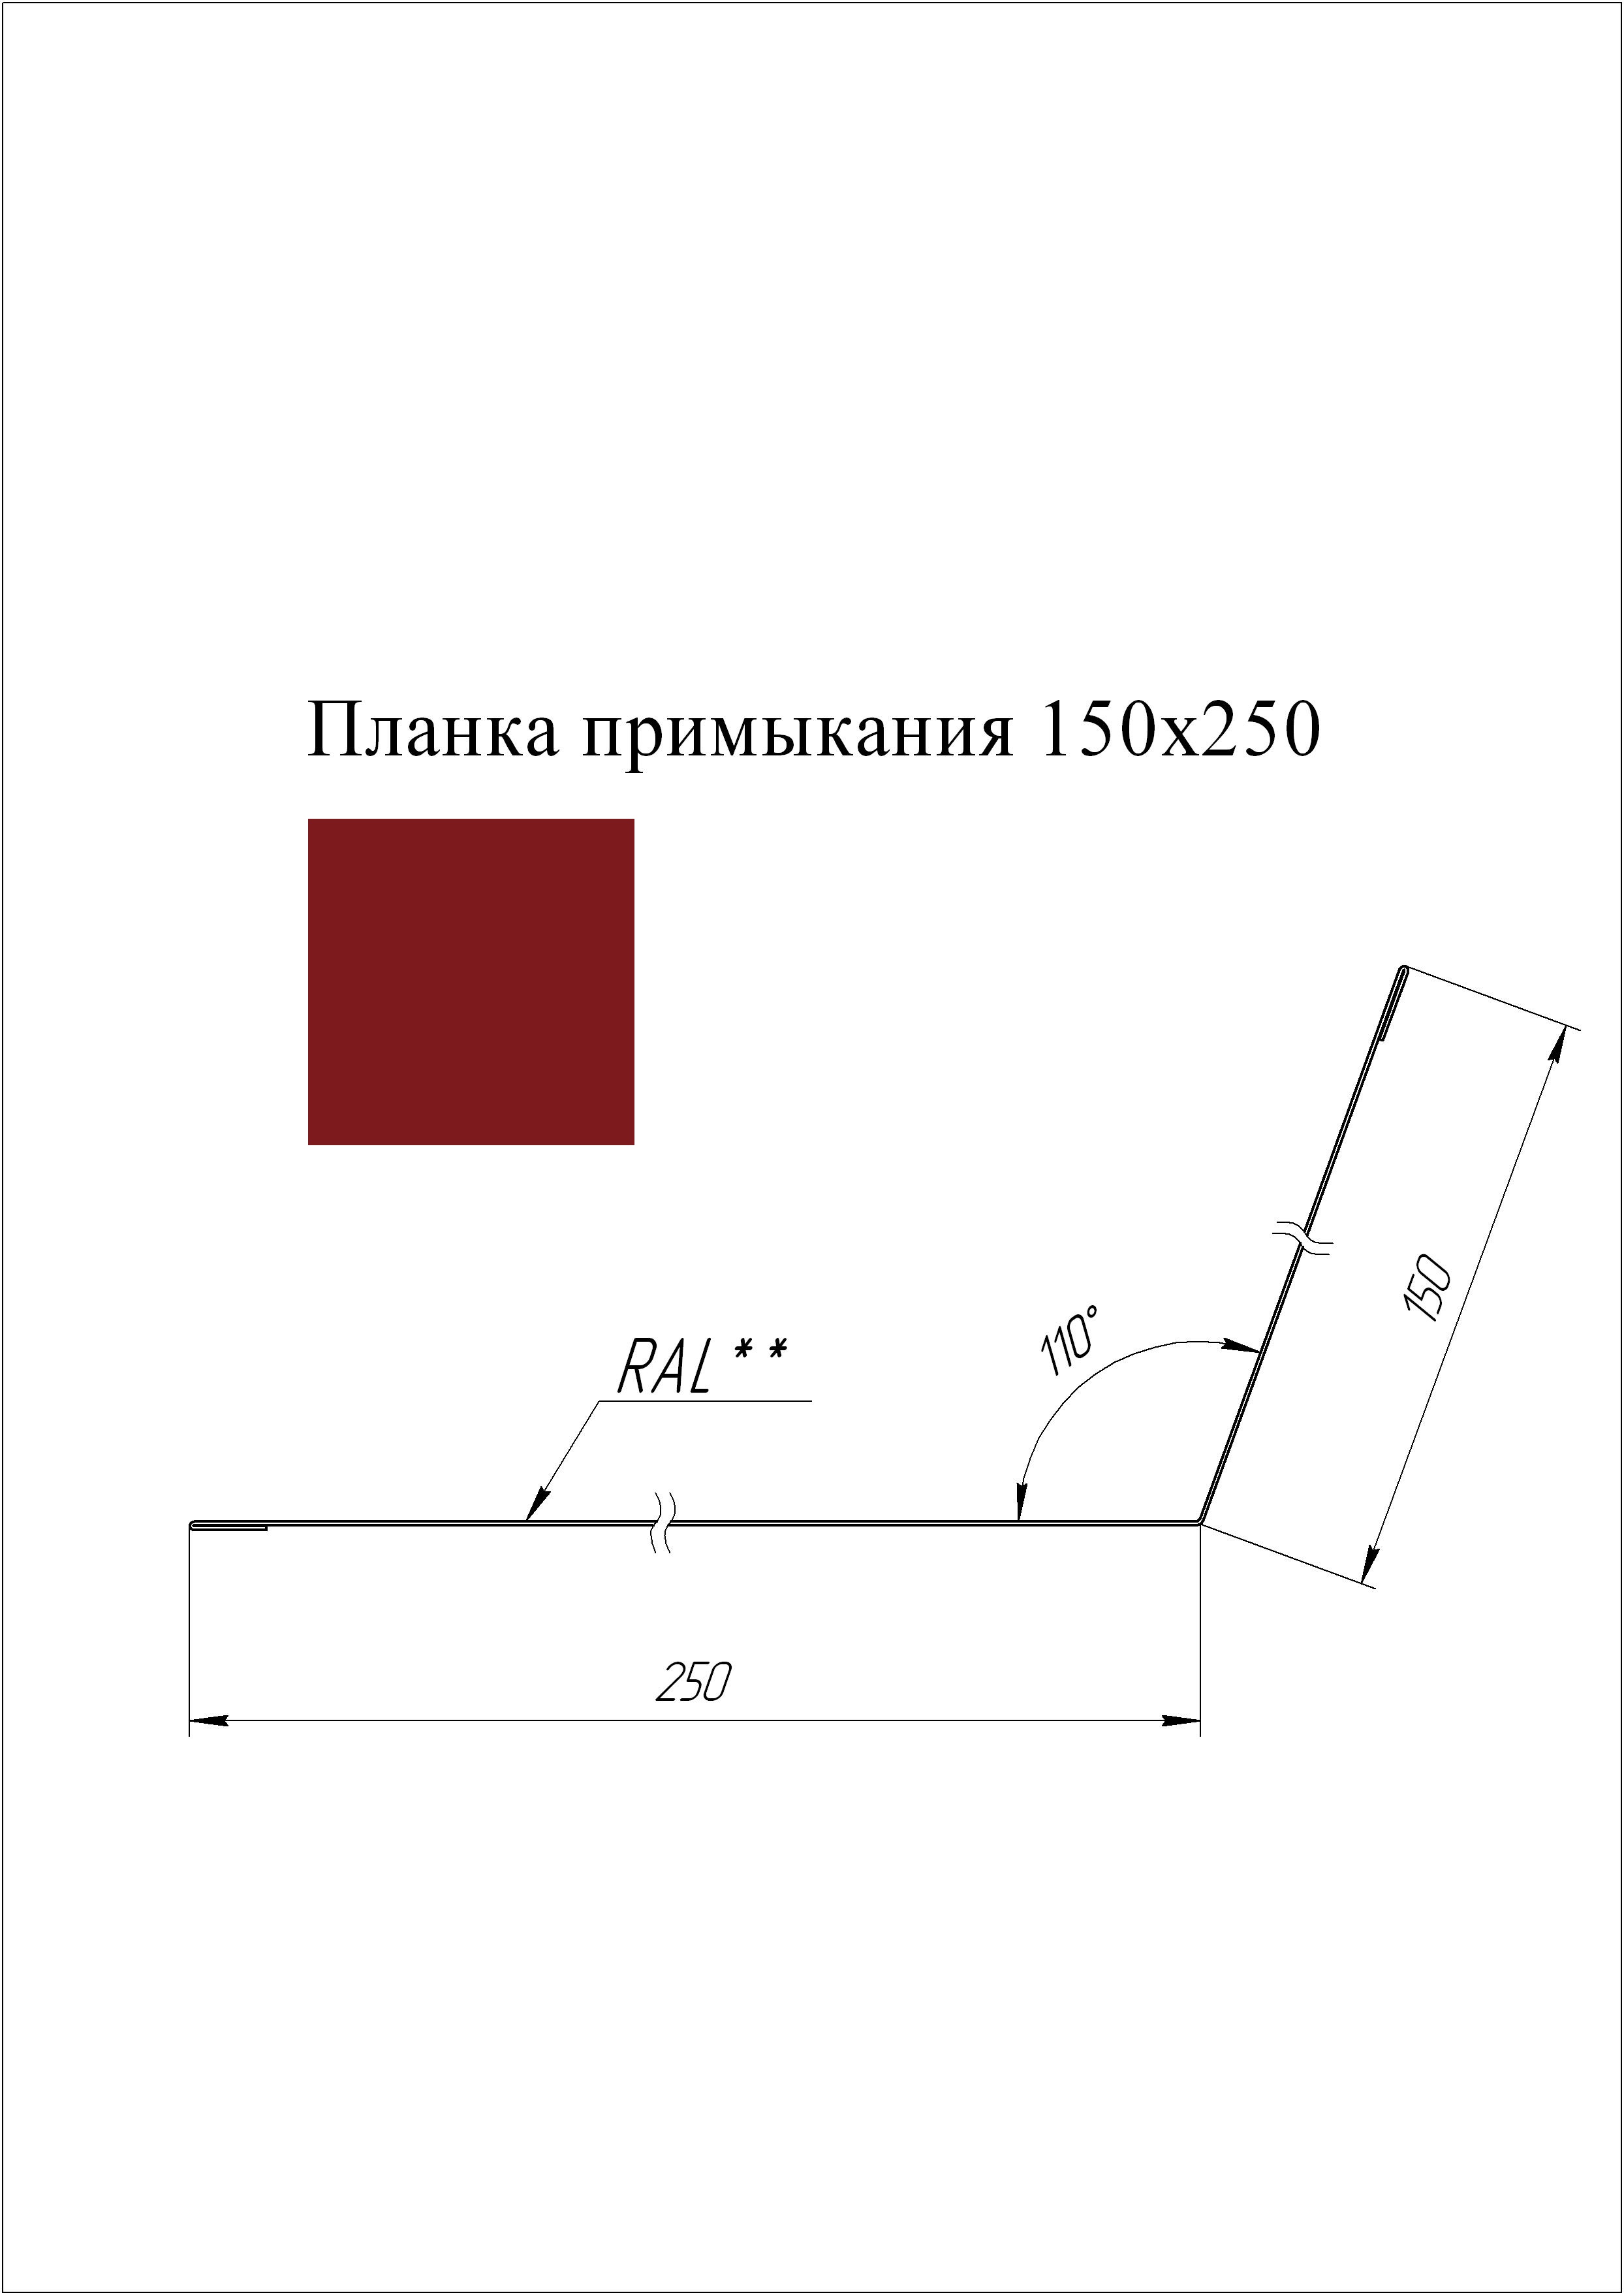 Планка примыкания 150*250 мм L=2 м GL PE-полиэстер 0,45 RAL 3003 - красный рубин